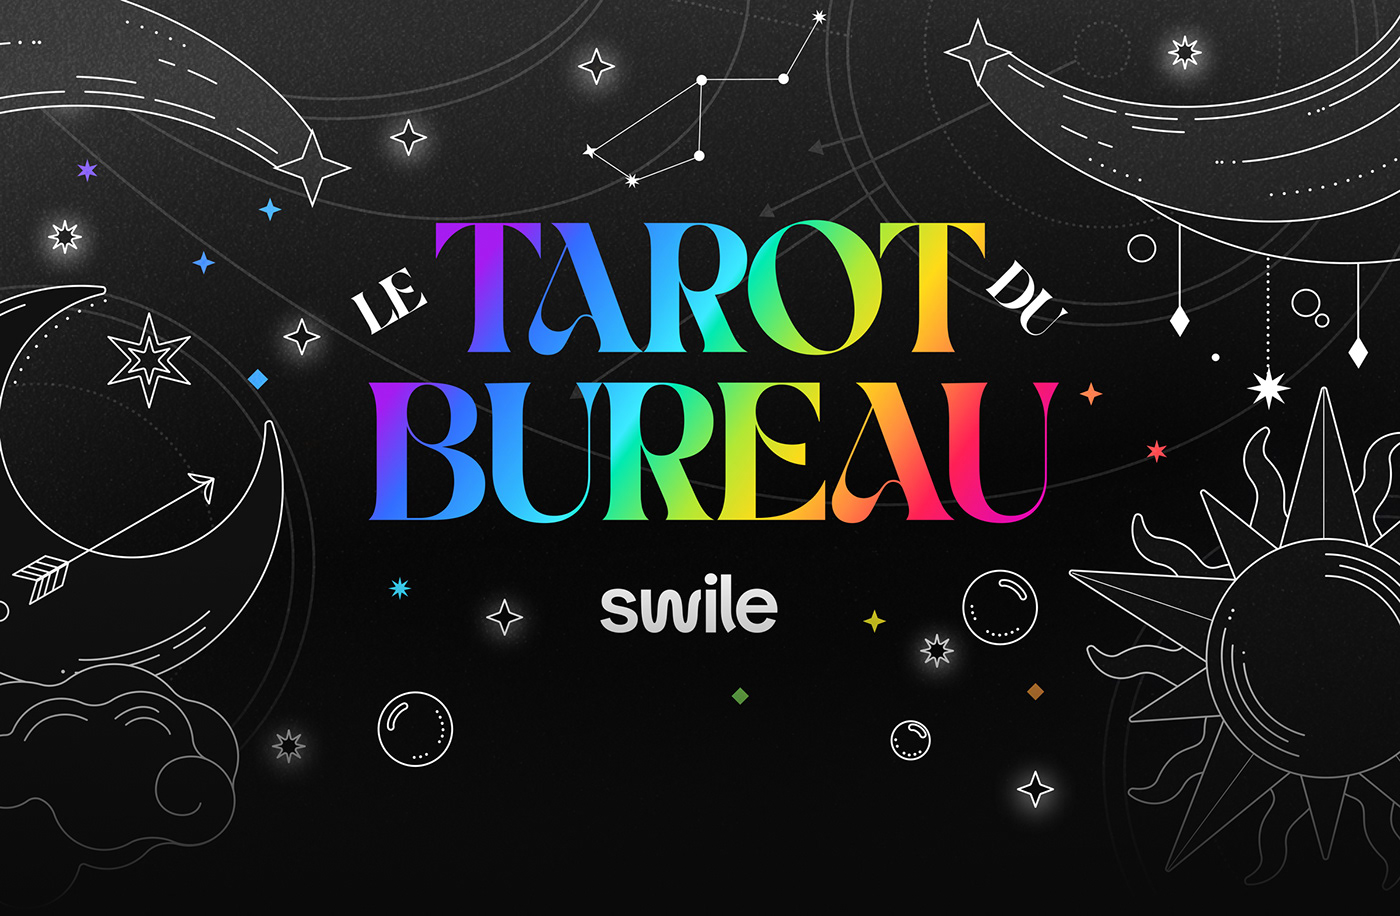 Tarot Cards tarot design